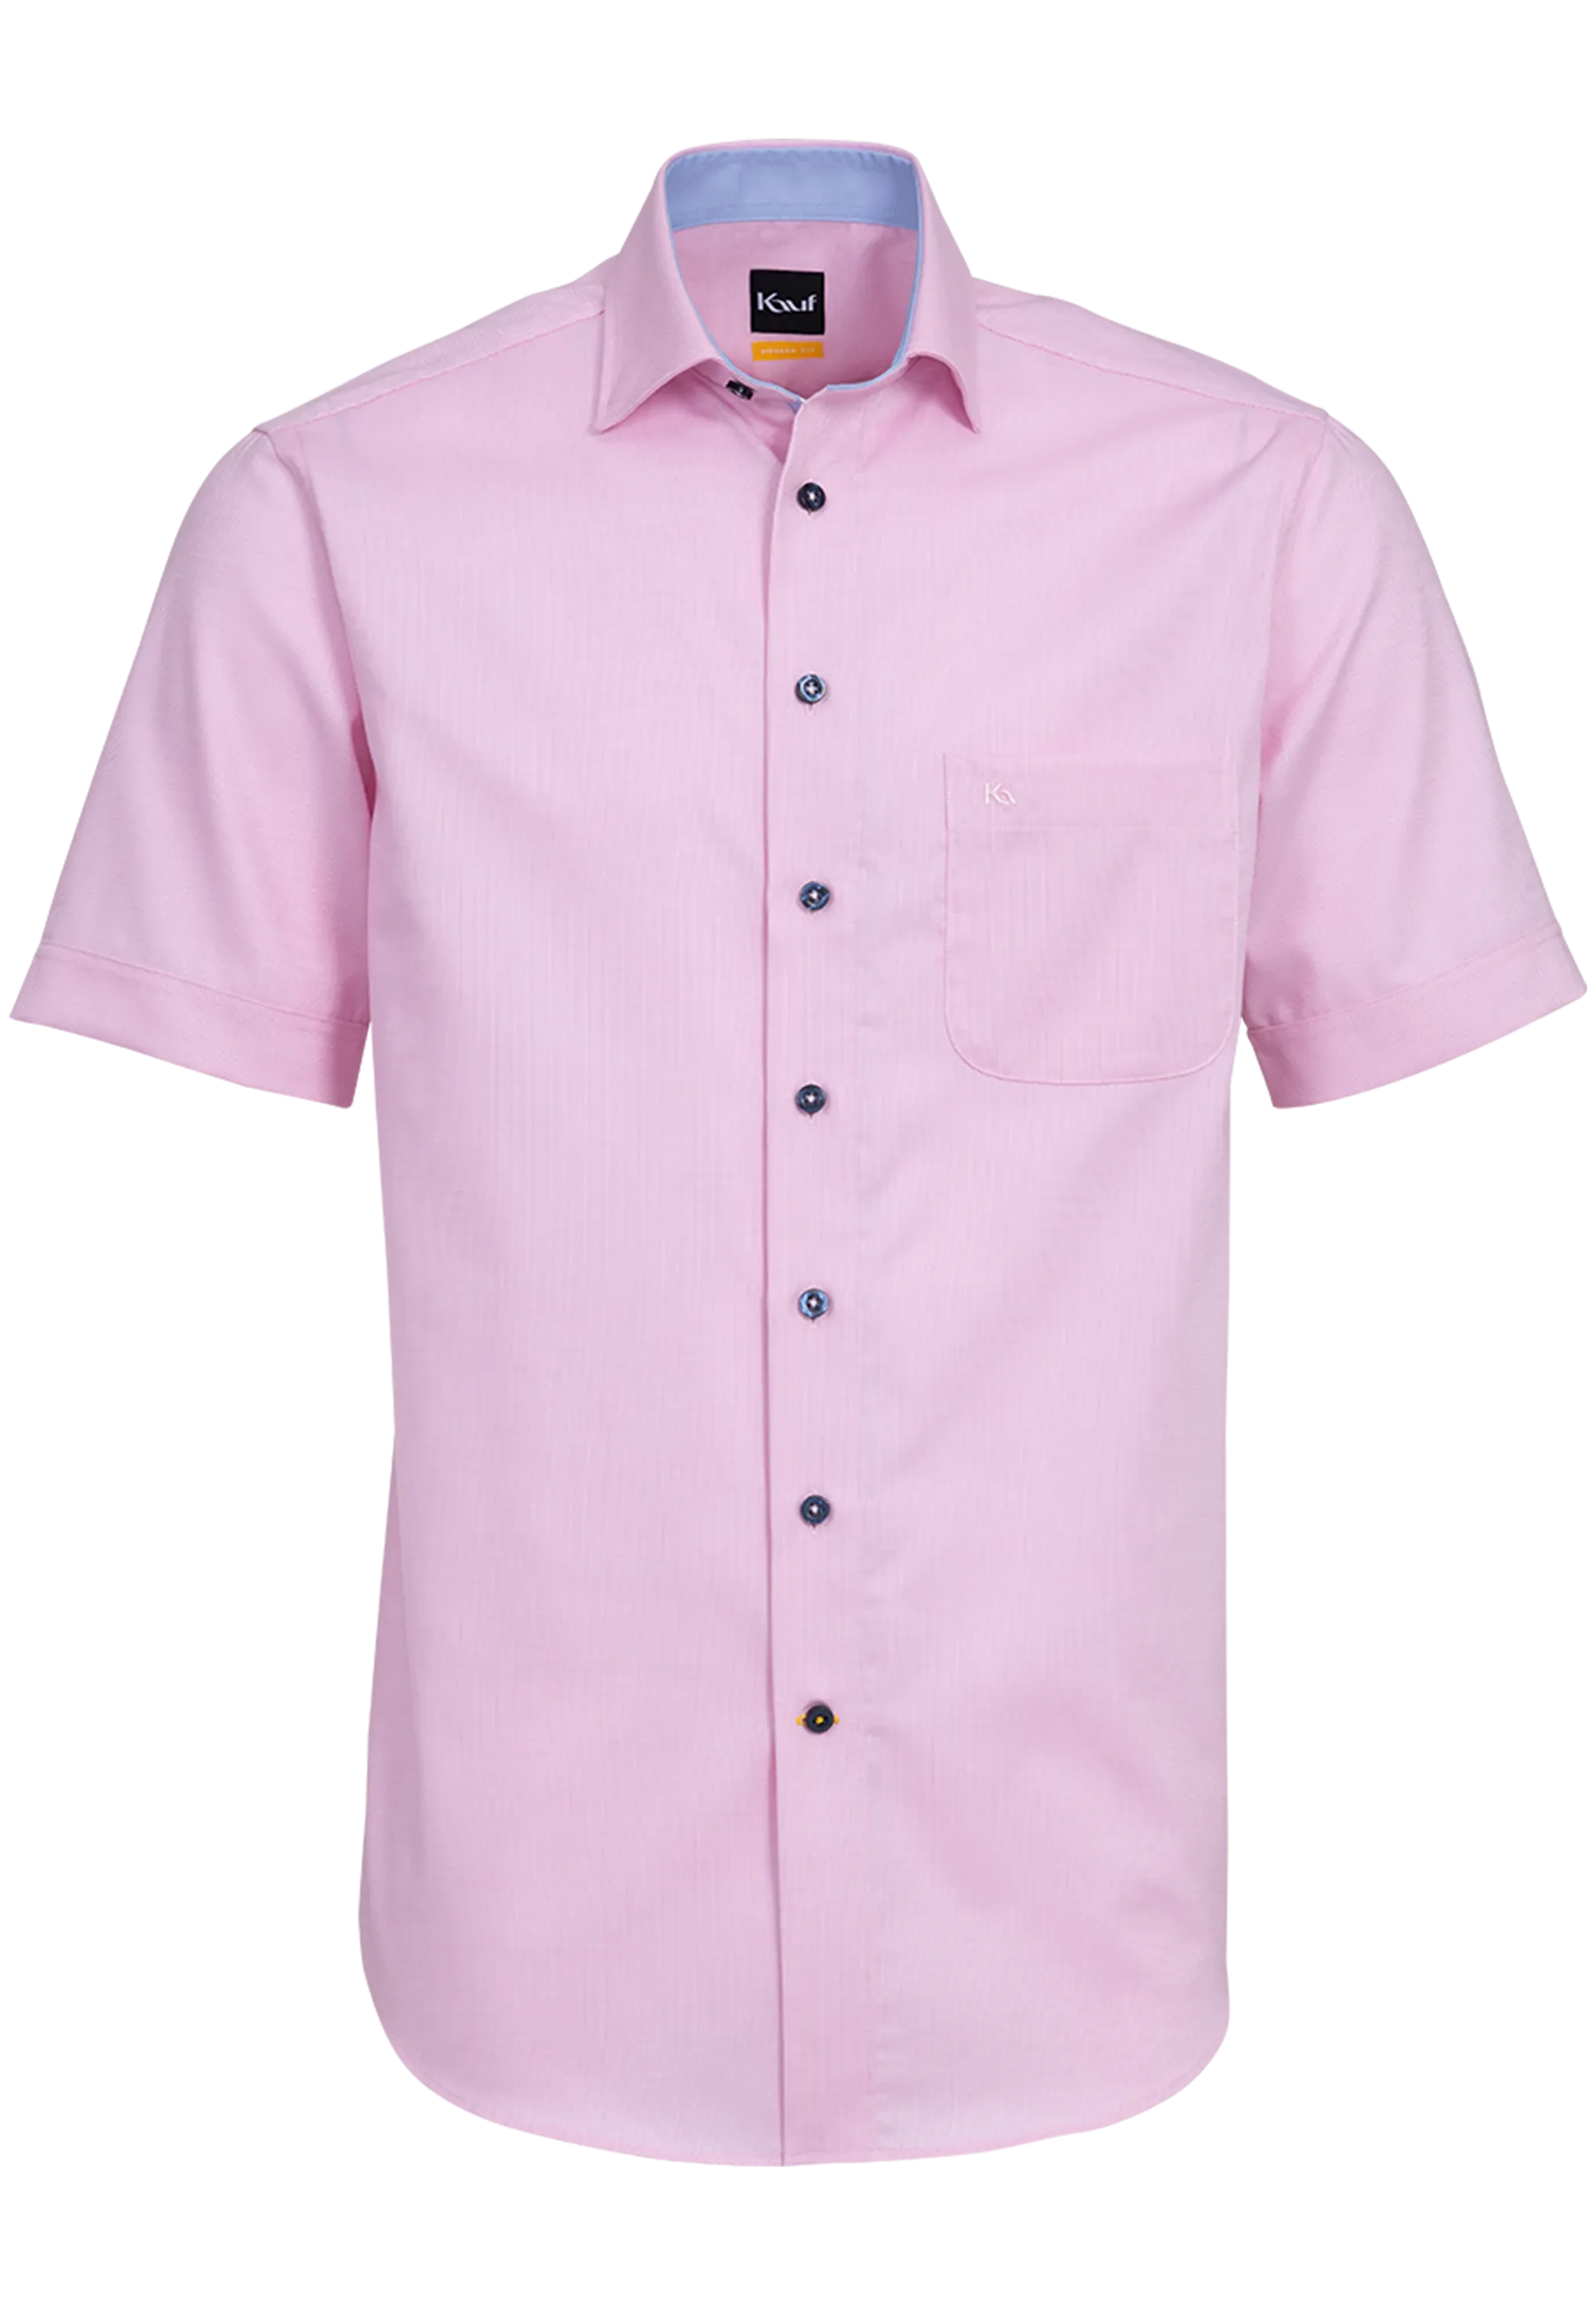 Herren Hemd rosa